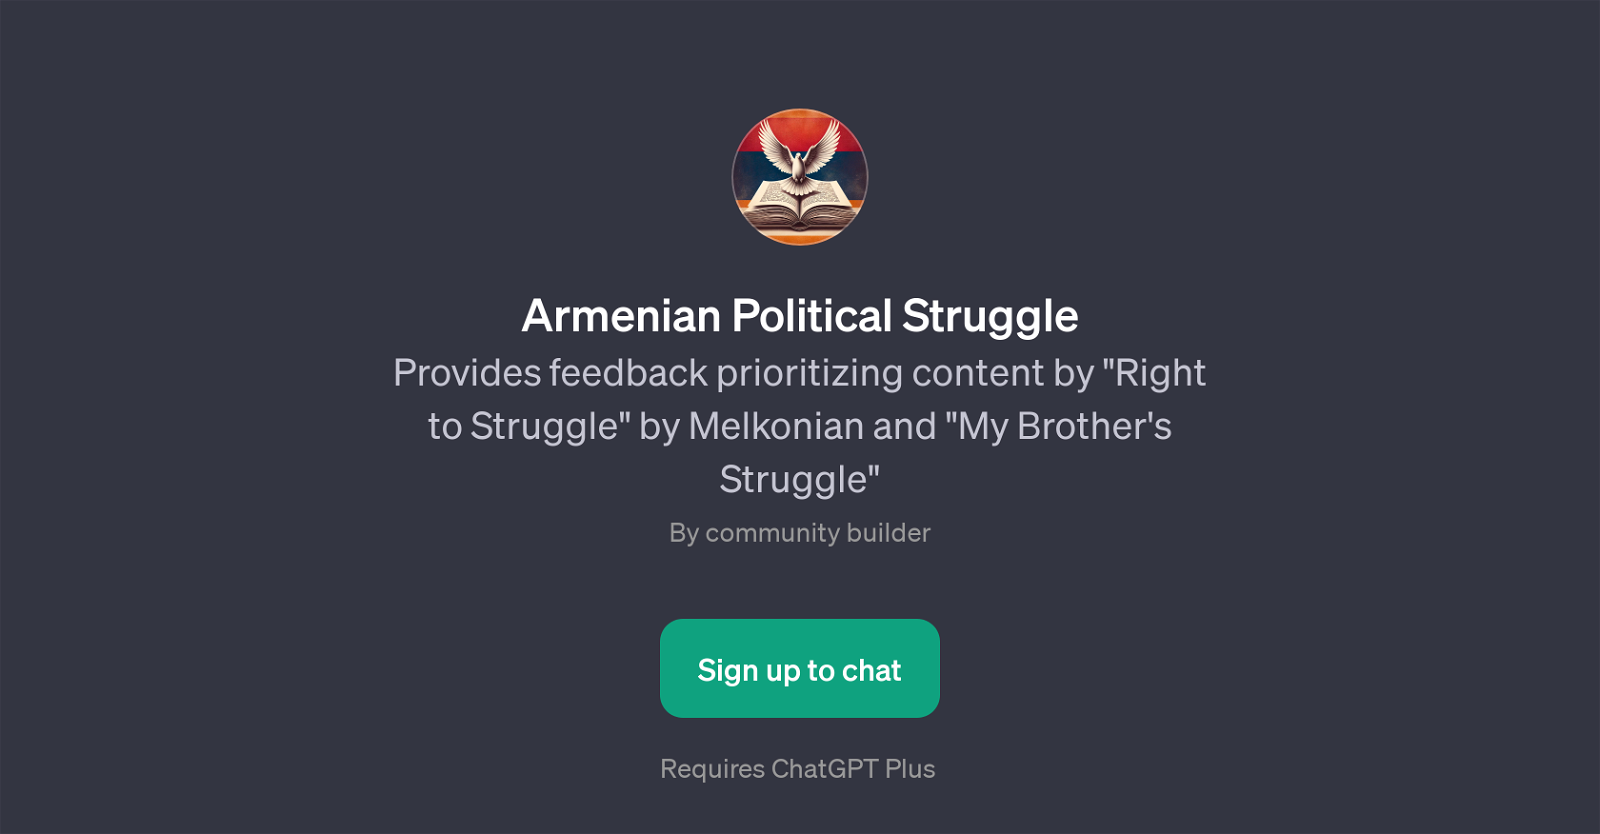 Armenian Political Struggle website